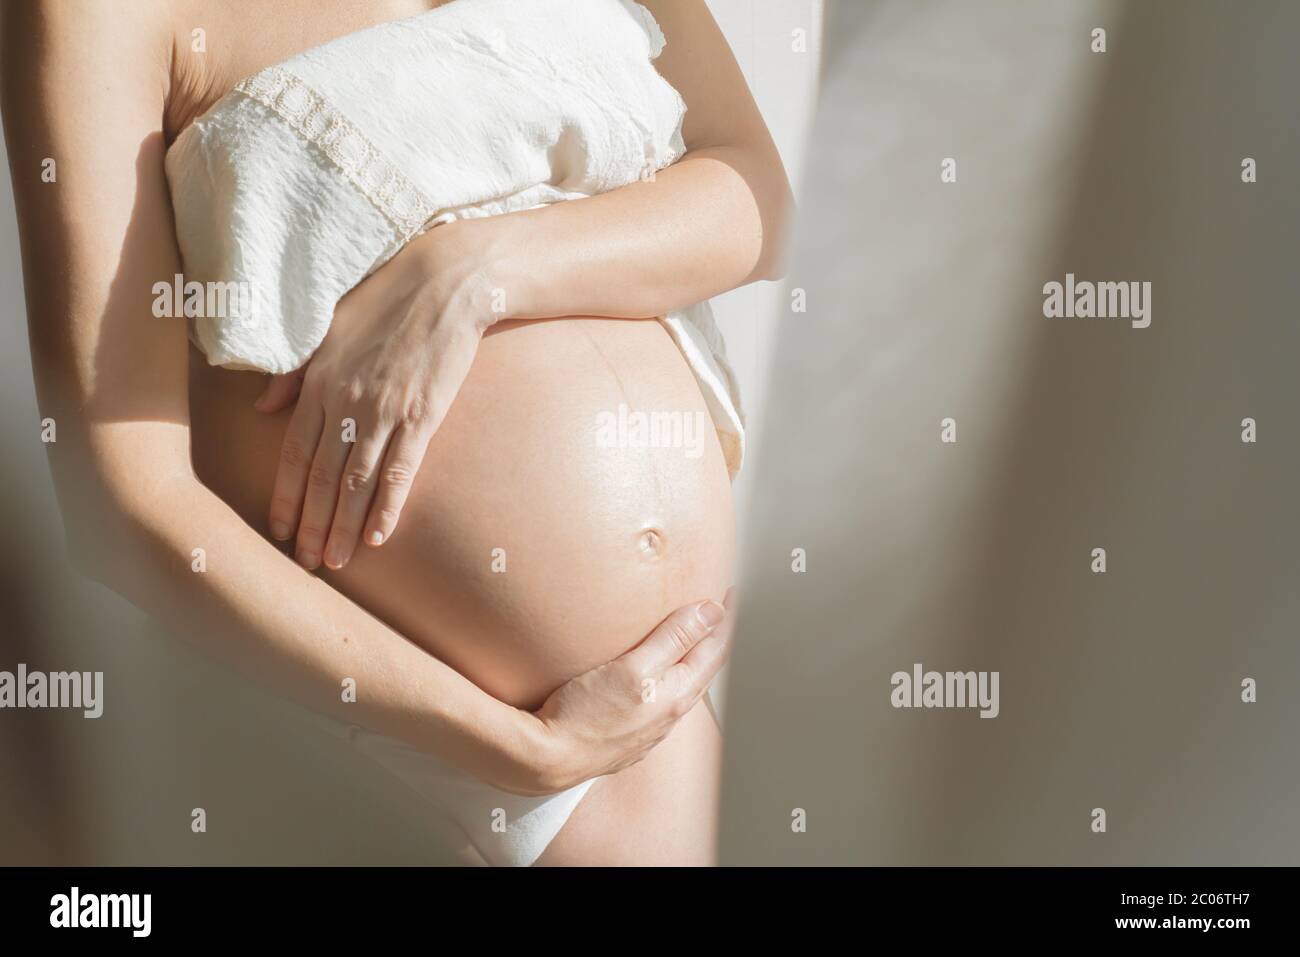 le mani calde e gentili carezzano il bel ventre incinta, il concetto, le lenzuola artistiche e il tessuto bianco carezza donna intimità Foto Stock